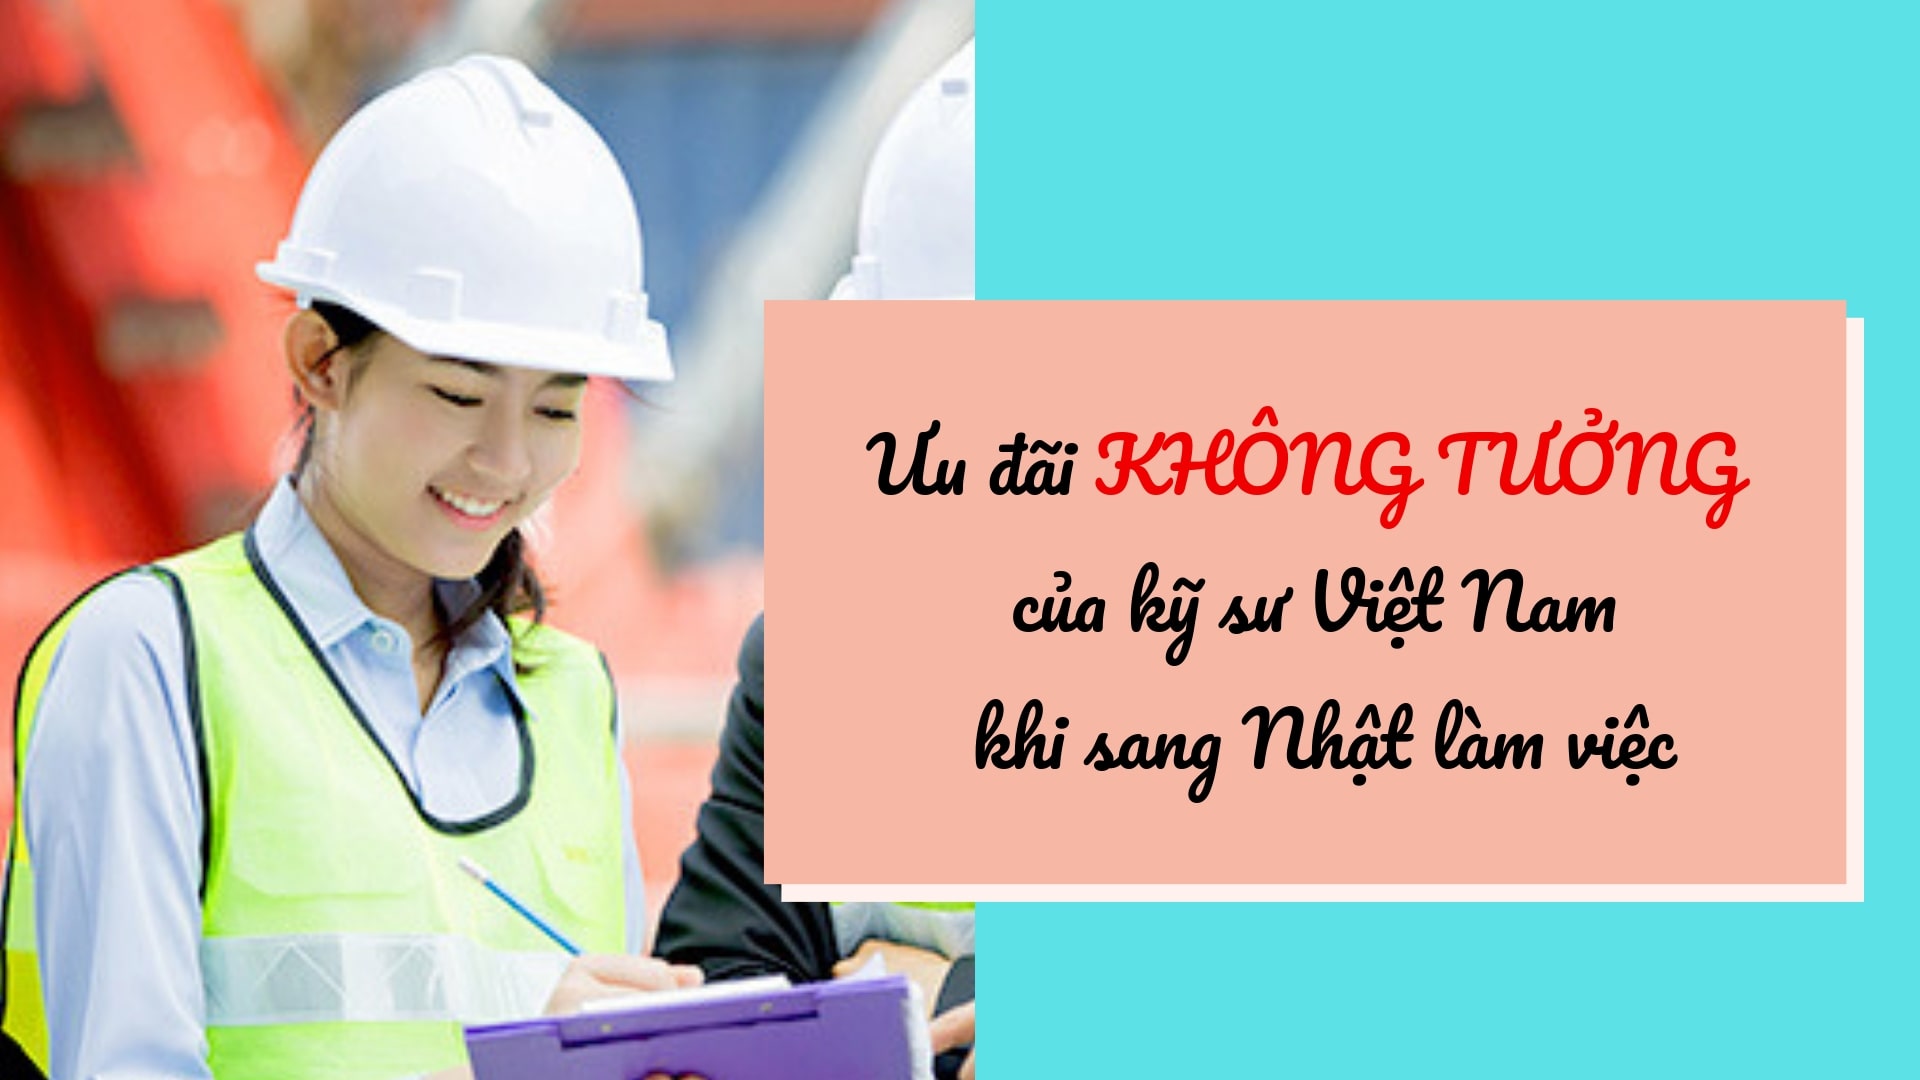 Những ưu đãi KHÔNG TƯỞNG của kỹ sư Việt Nam khi sang Nhật làm việc